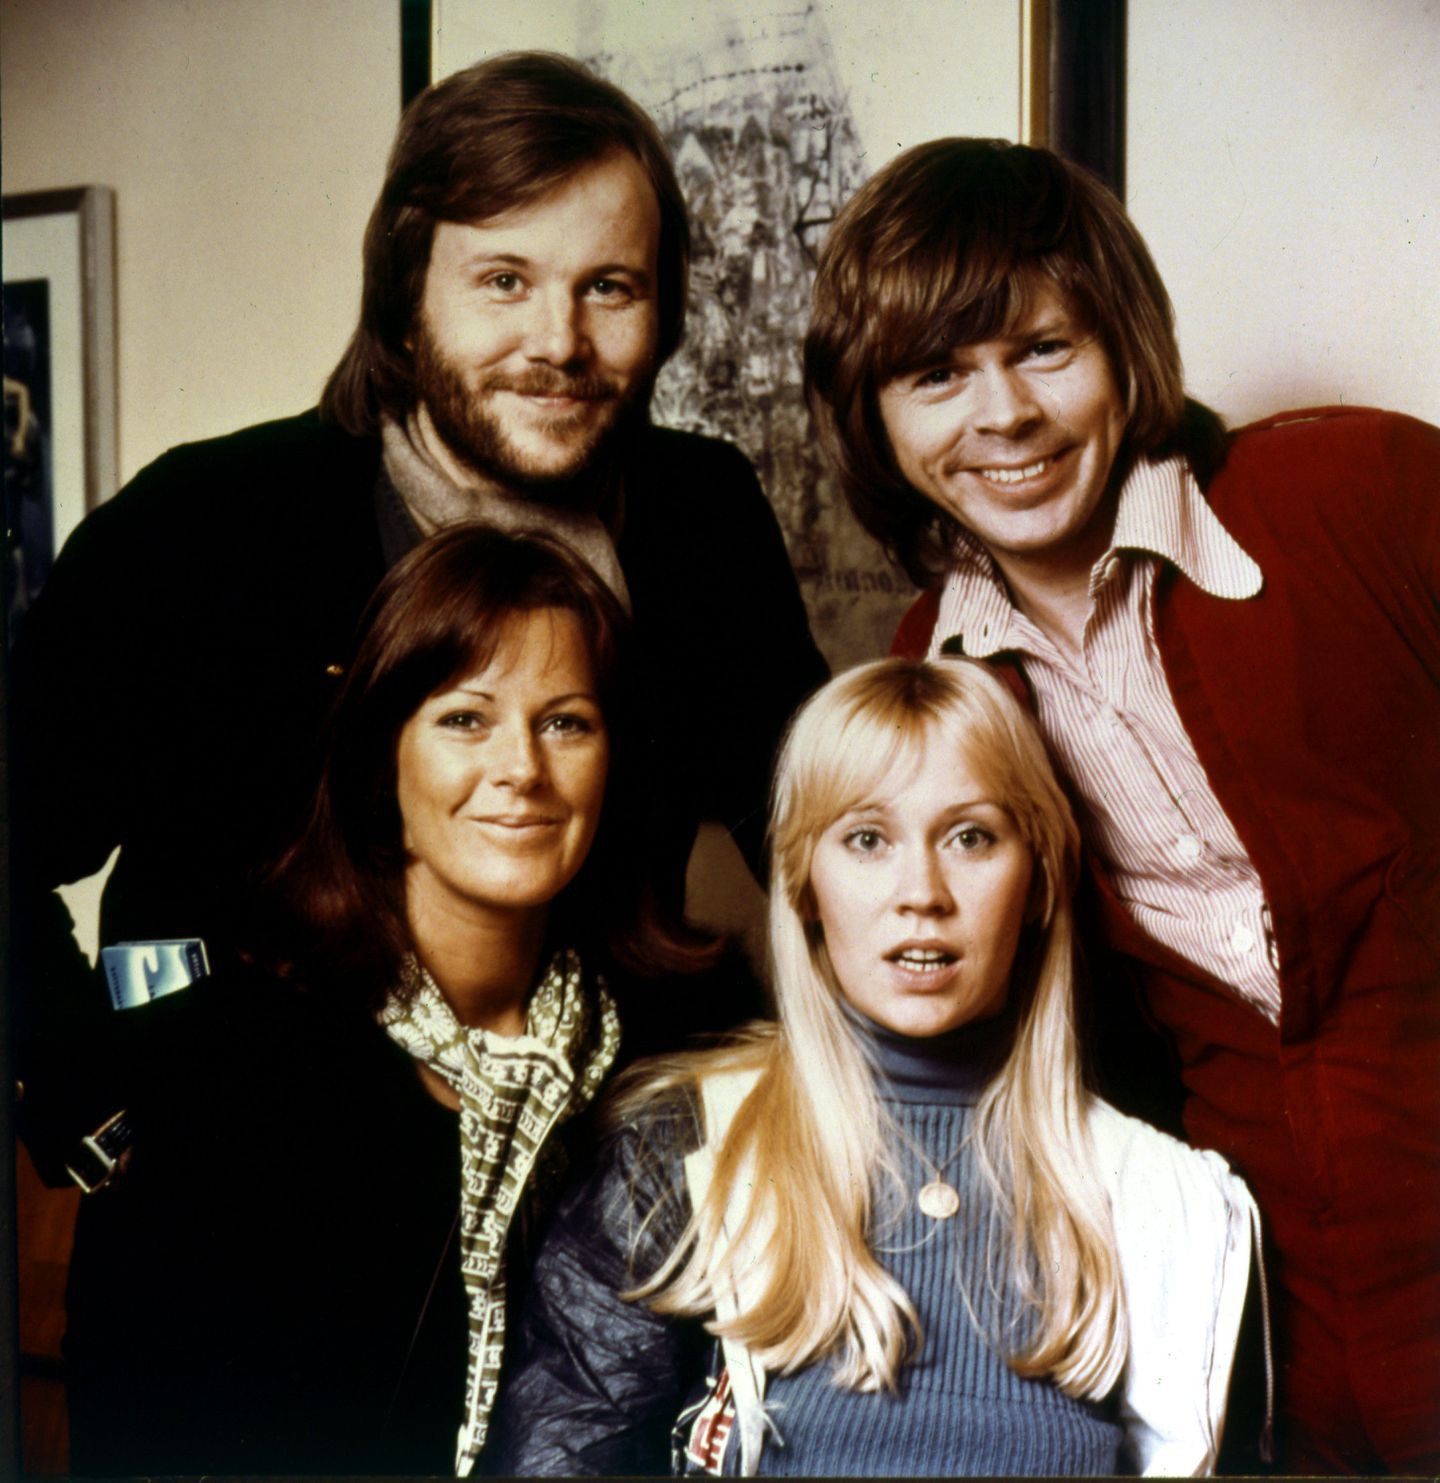 Bất ngờ trước những niềm đau giấu kín của hai người đẹp trong nhóm ABBA - 7